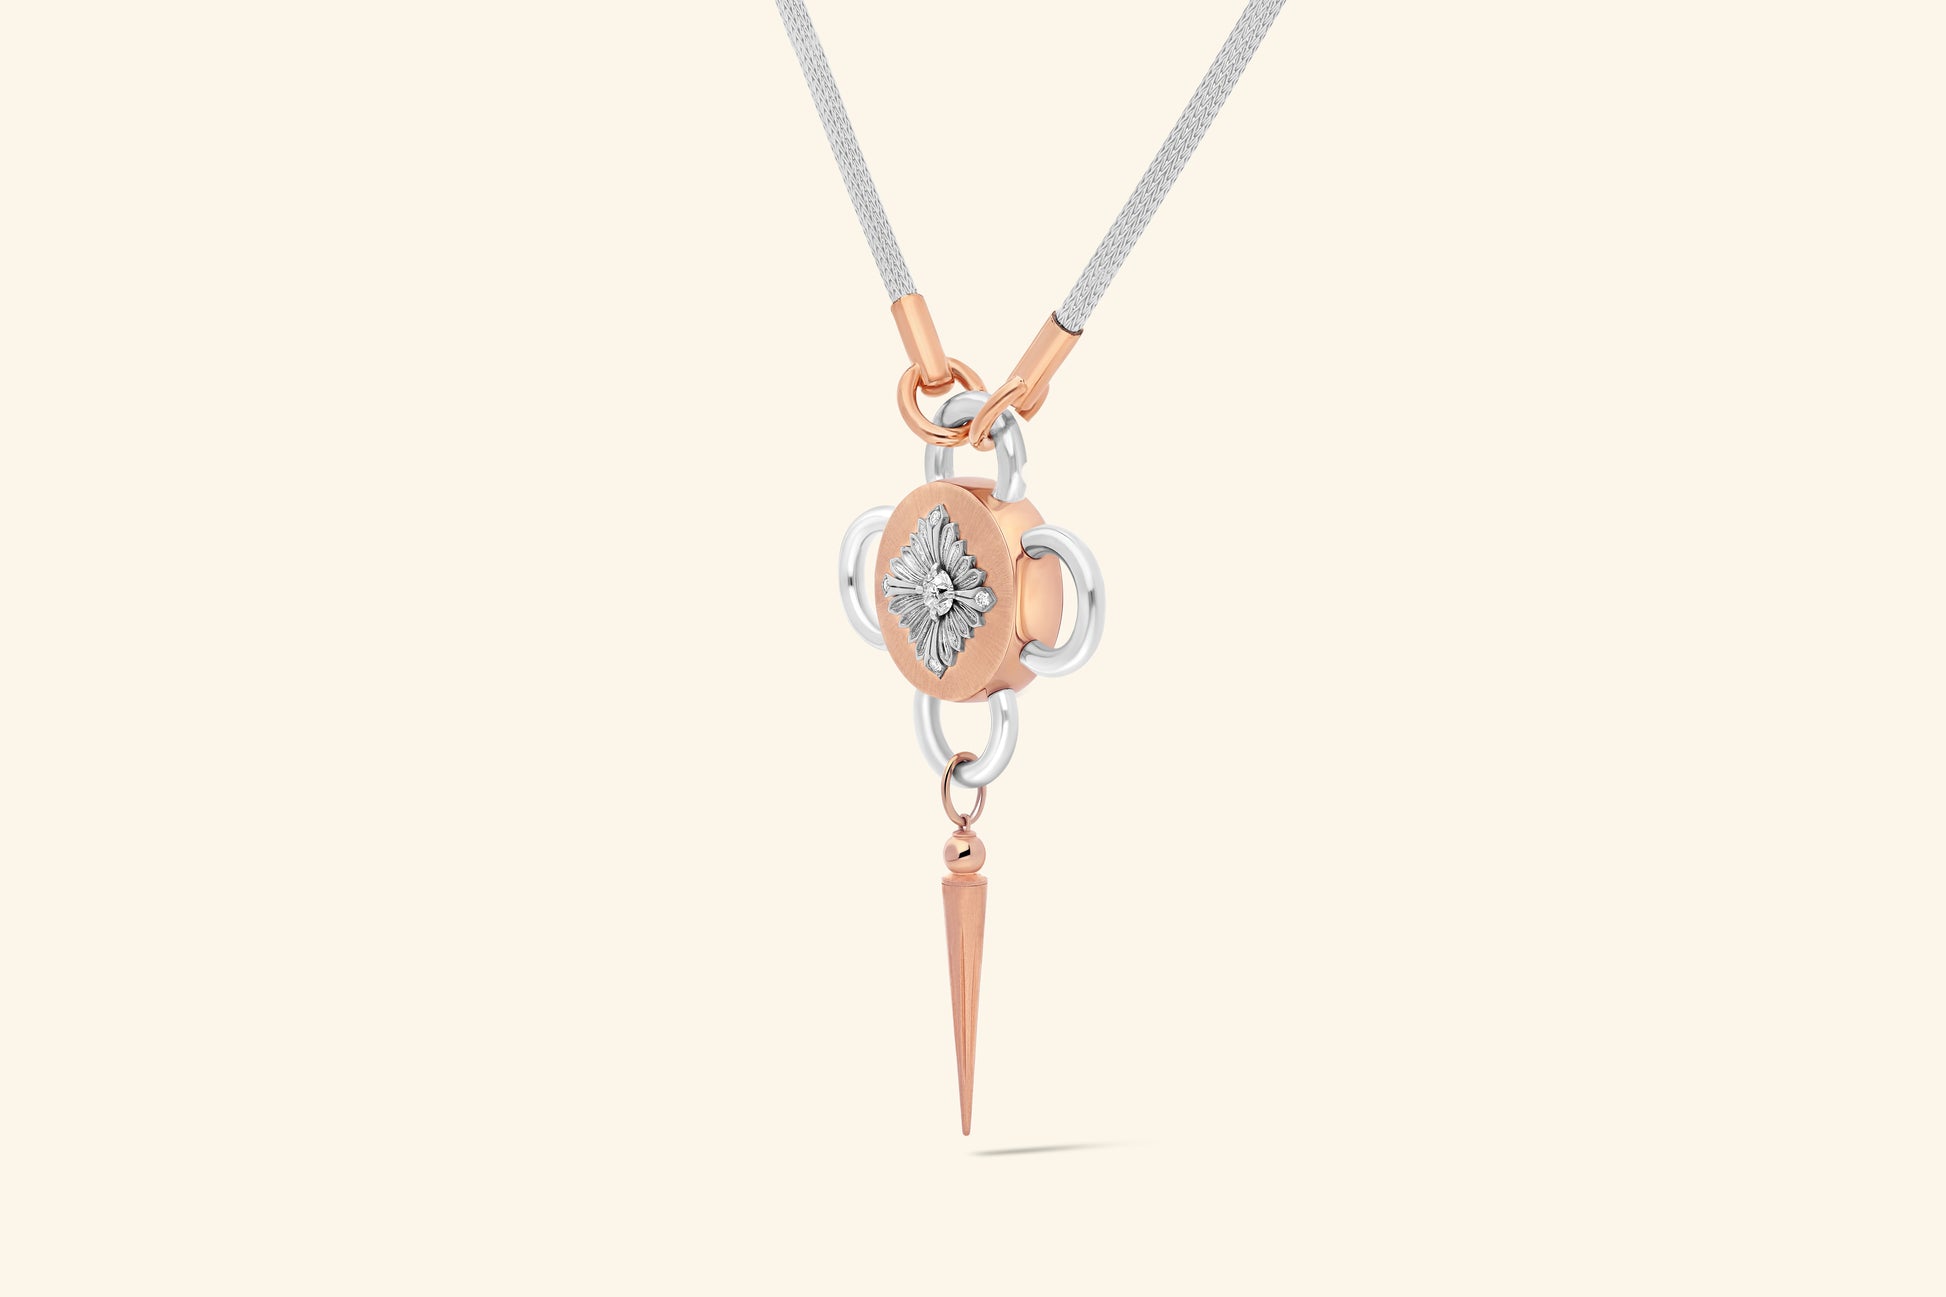 Collier Bolt, diamant de ~0,55 carat serti sur une fleur en argent poli, décorée de 4 diamants pour ~0,04 carat et posée sur un plateau en or rose satiné. Chaine tricotée en argent, manchons en or rose poli.